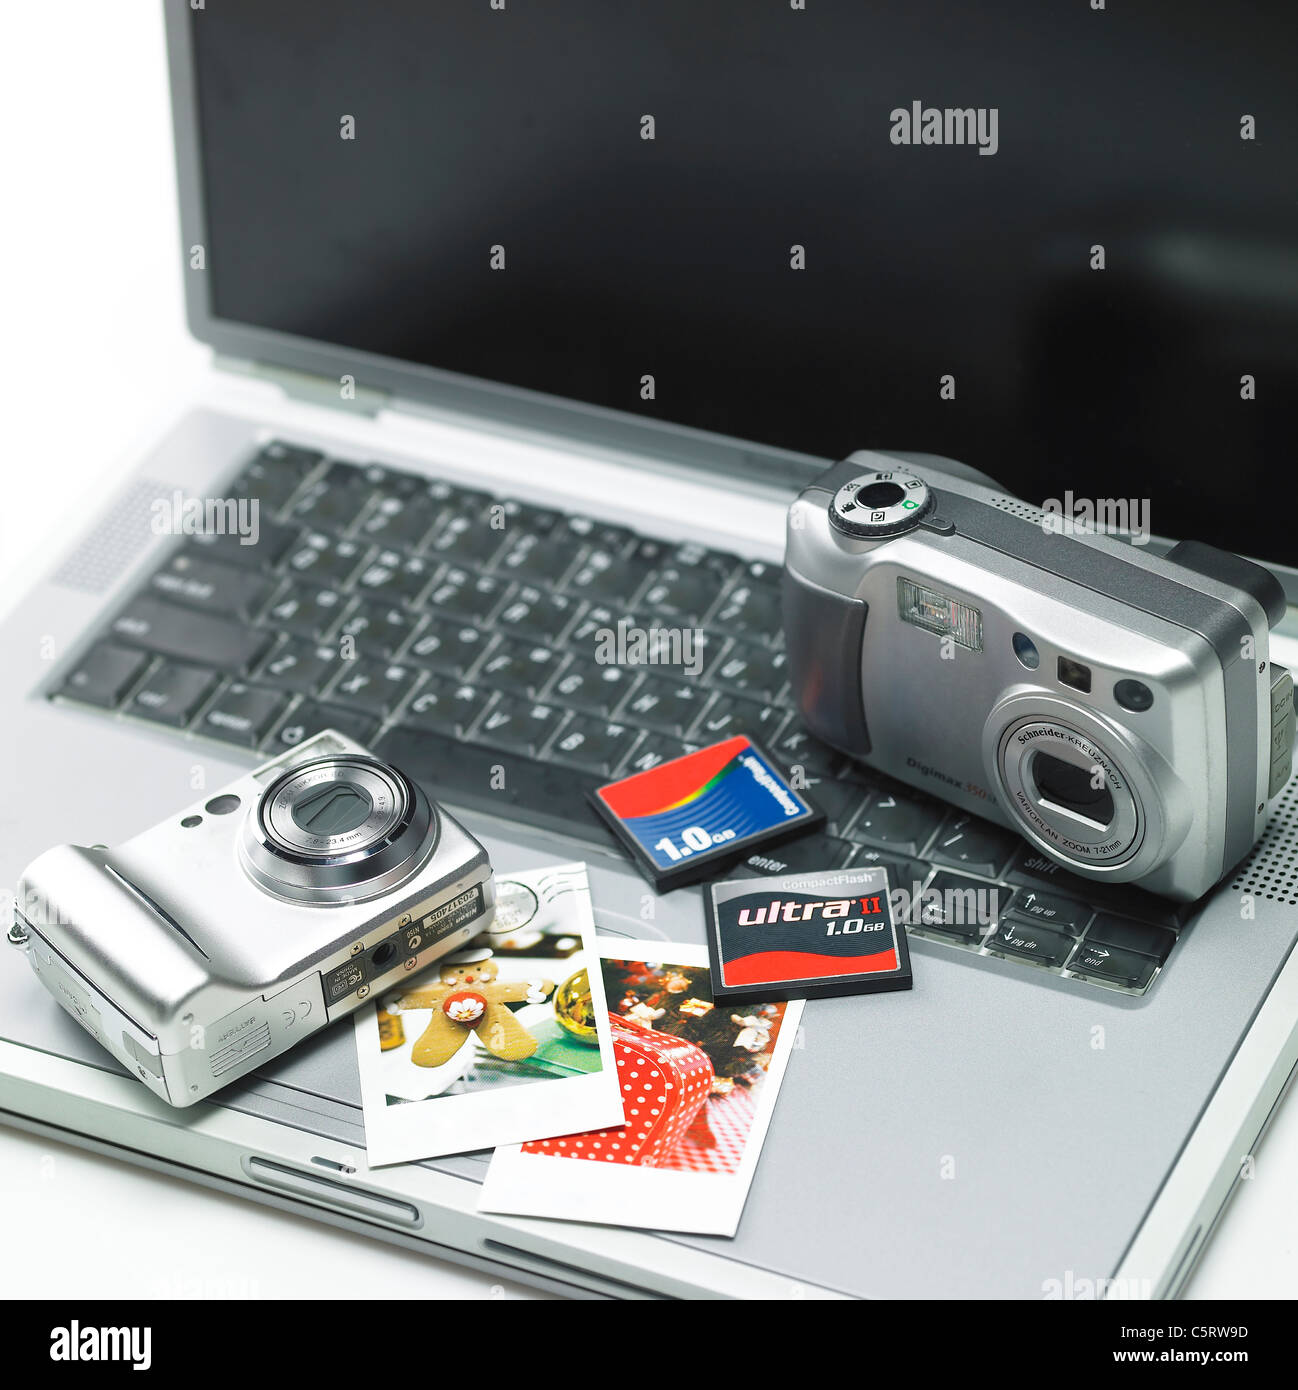 Les caméras et autres objets sur l'ordinateur portable Banque D'Images